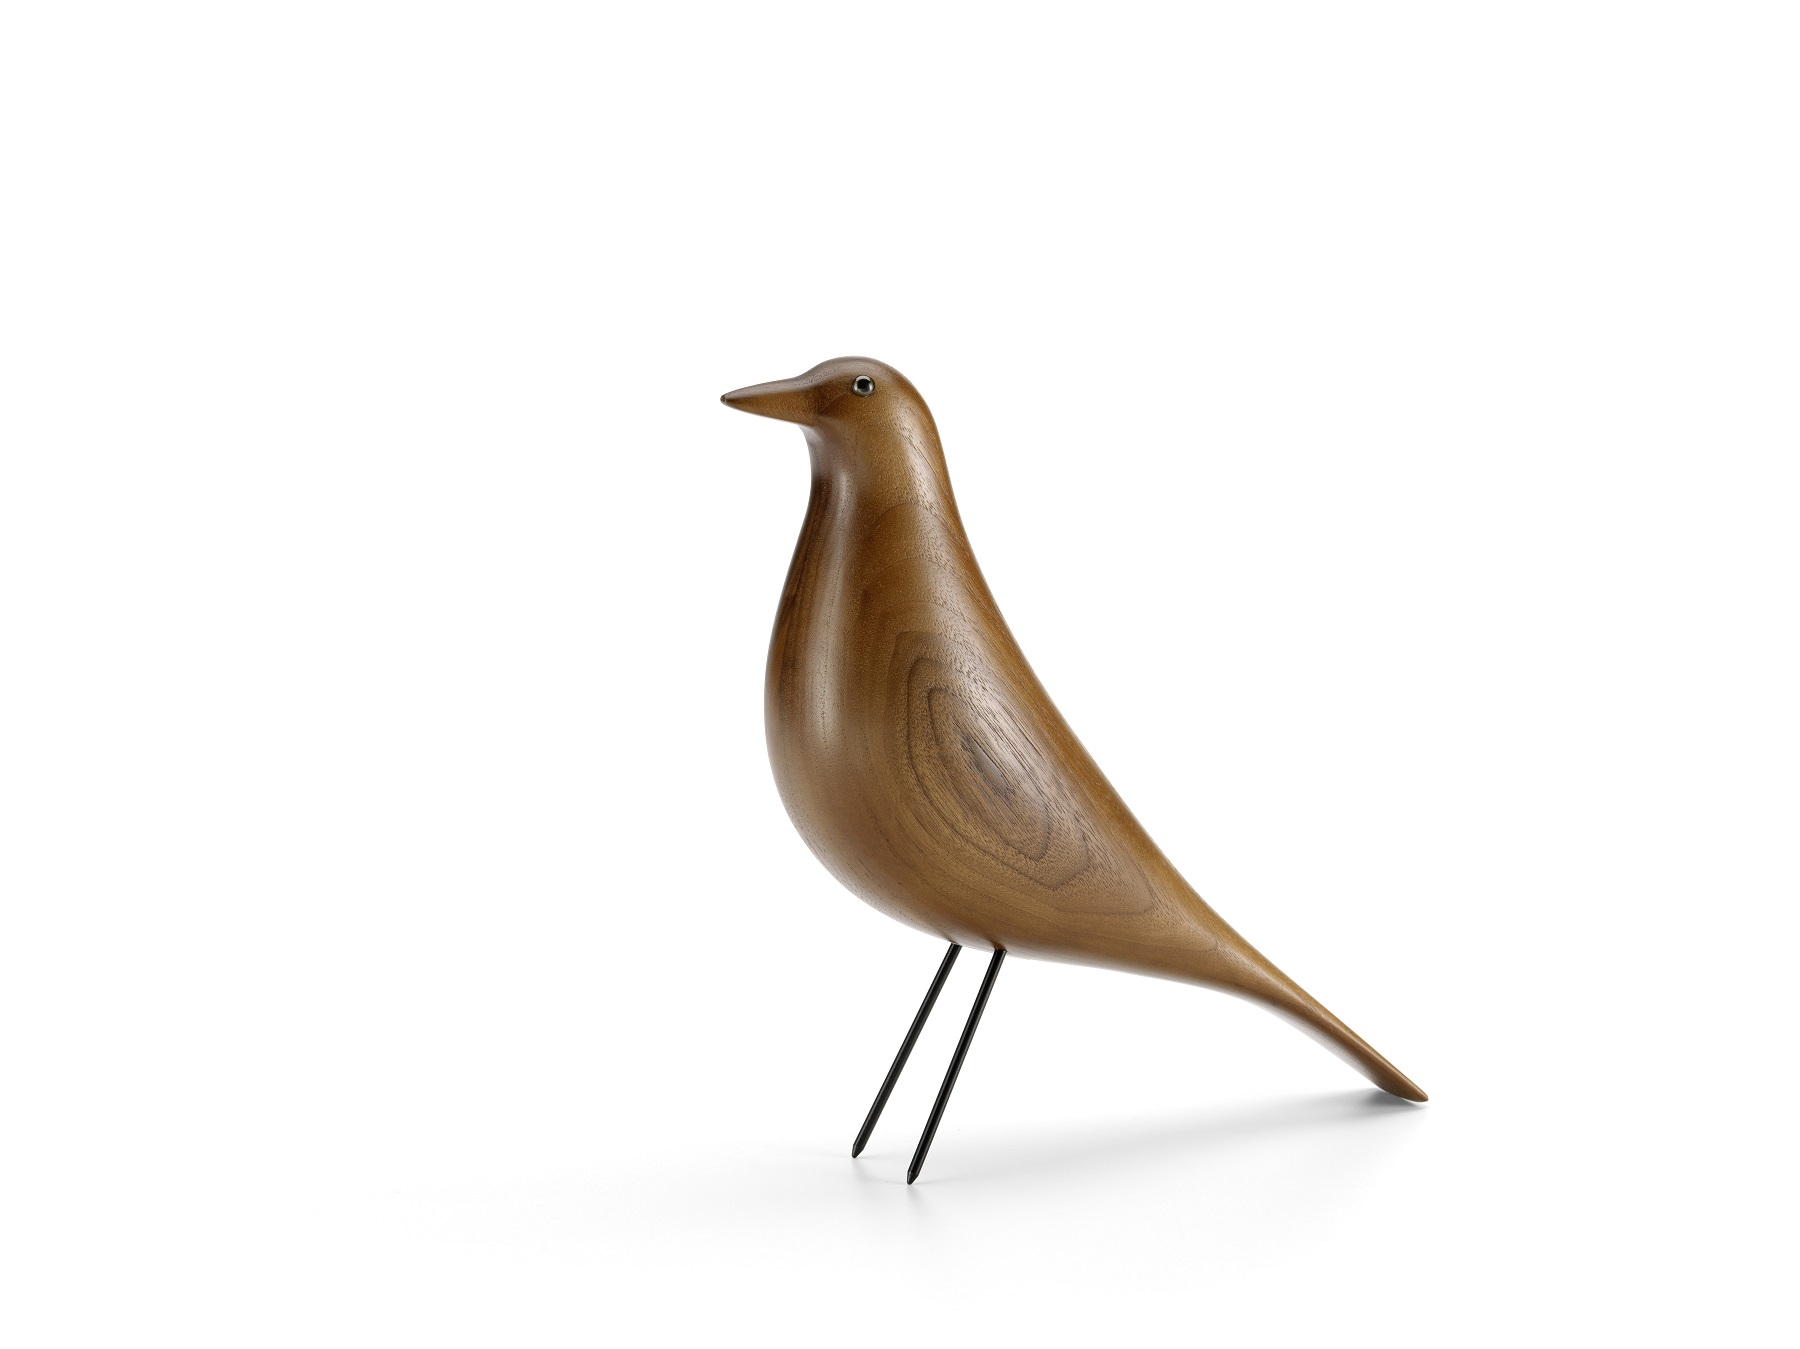 Designobjekt Vogel Eames House bird von vitra im LHL Onlineshop kaufen. Holz Vorderansicht